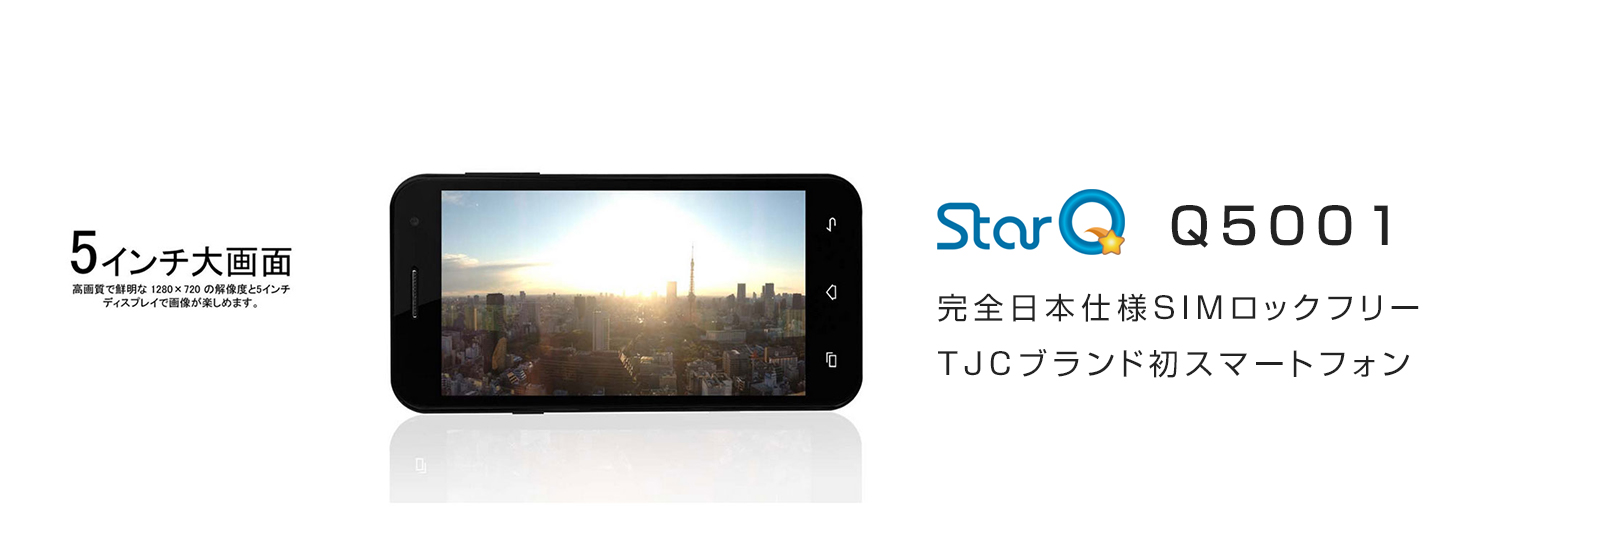 StarQ Q5001 スマートフォン